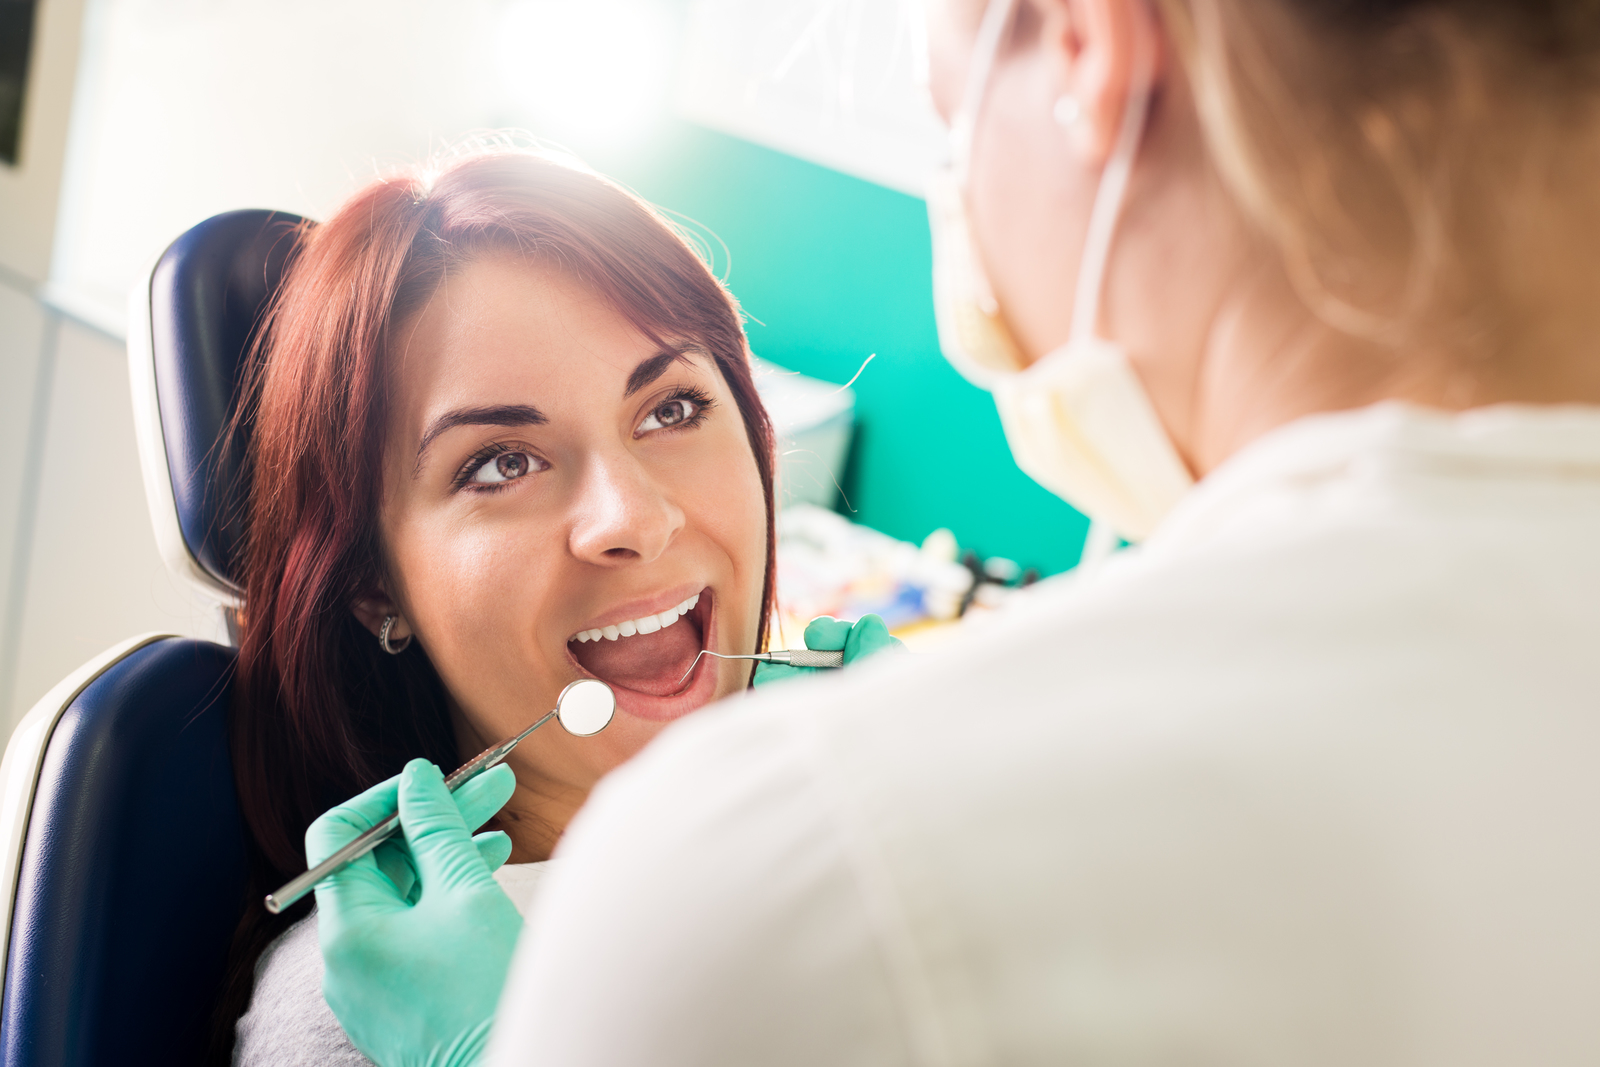 Czyszczenie zębów z aparatem ortodontycznym – 3 ważne zasady!